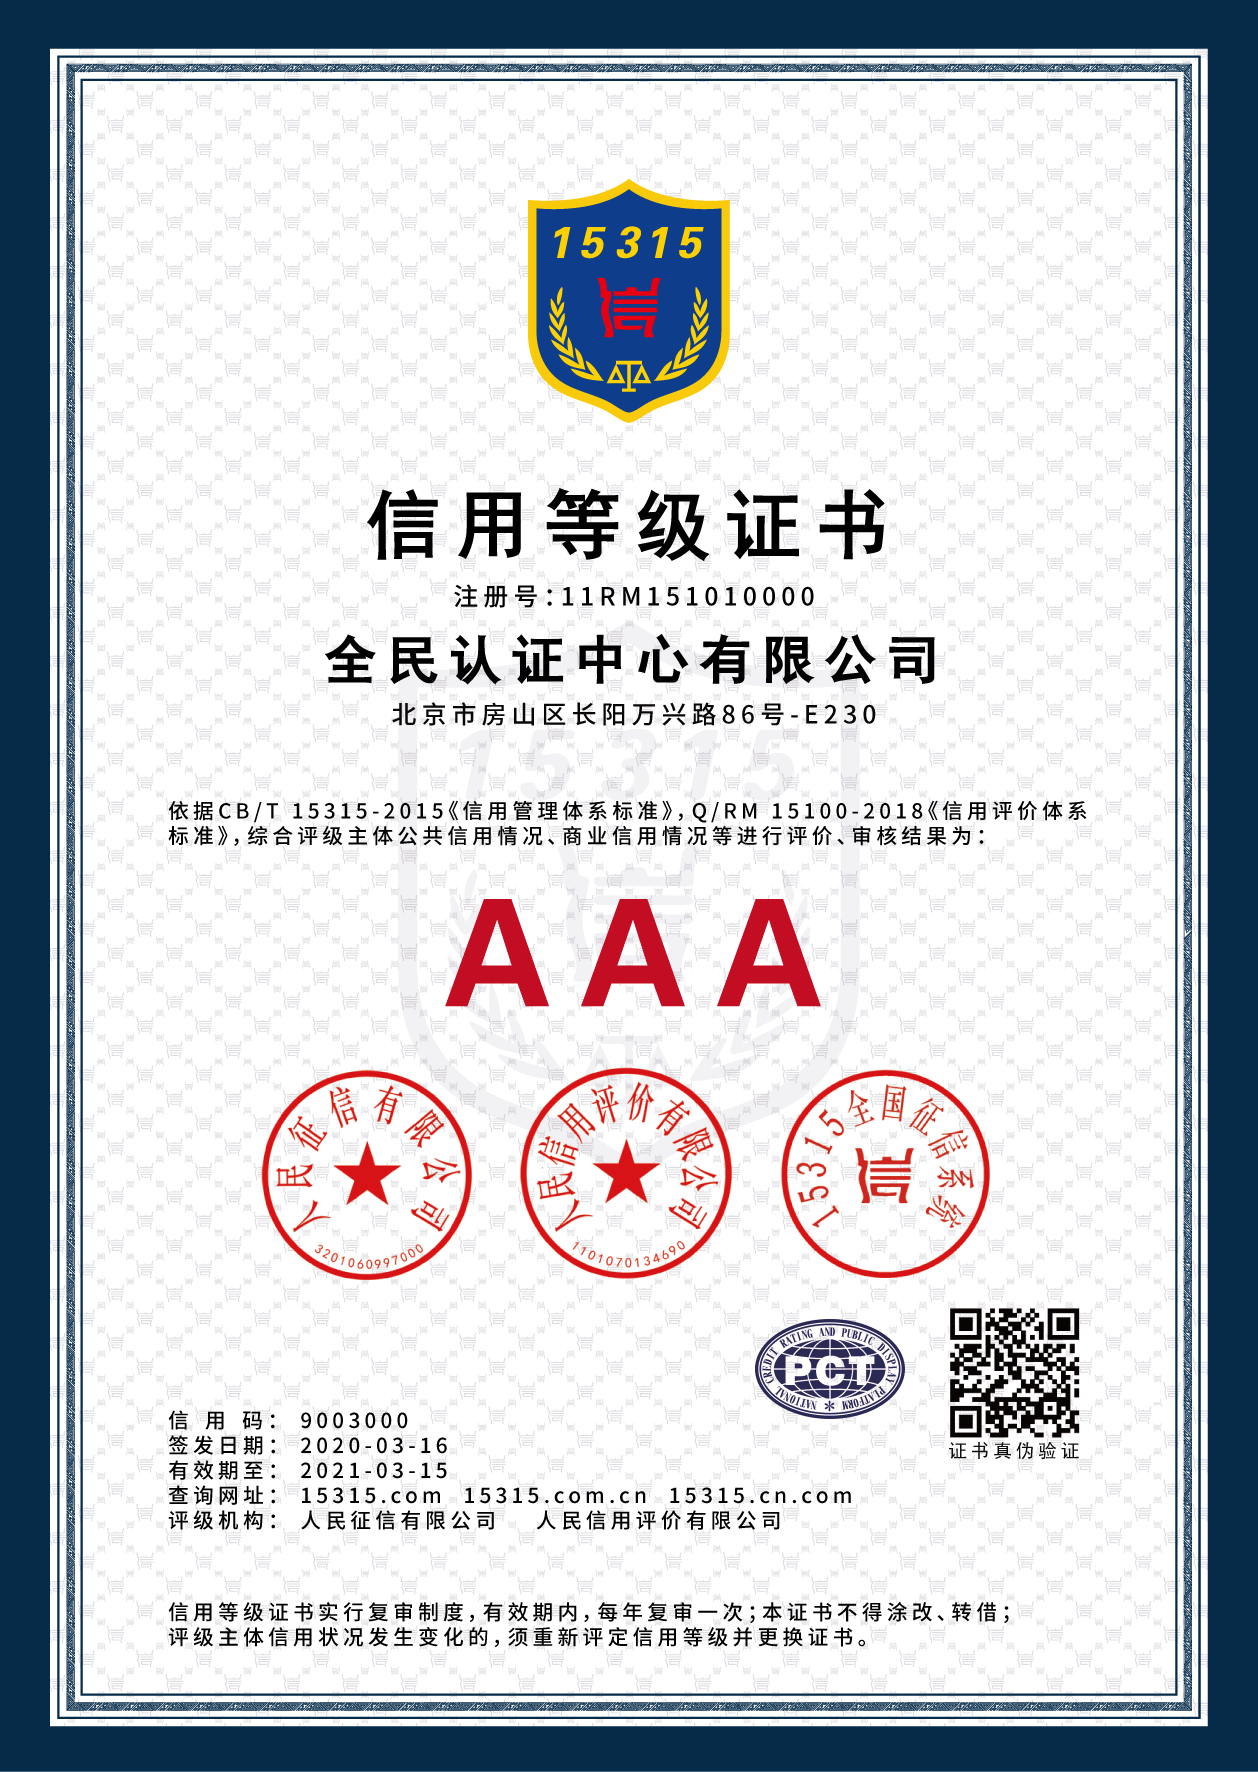 新疆AAA级信用企业等级认证 信用评级报告